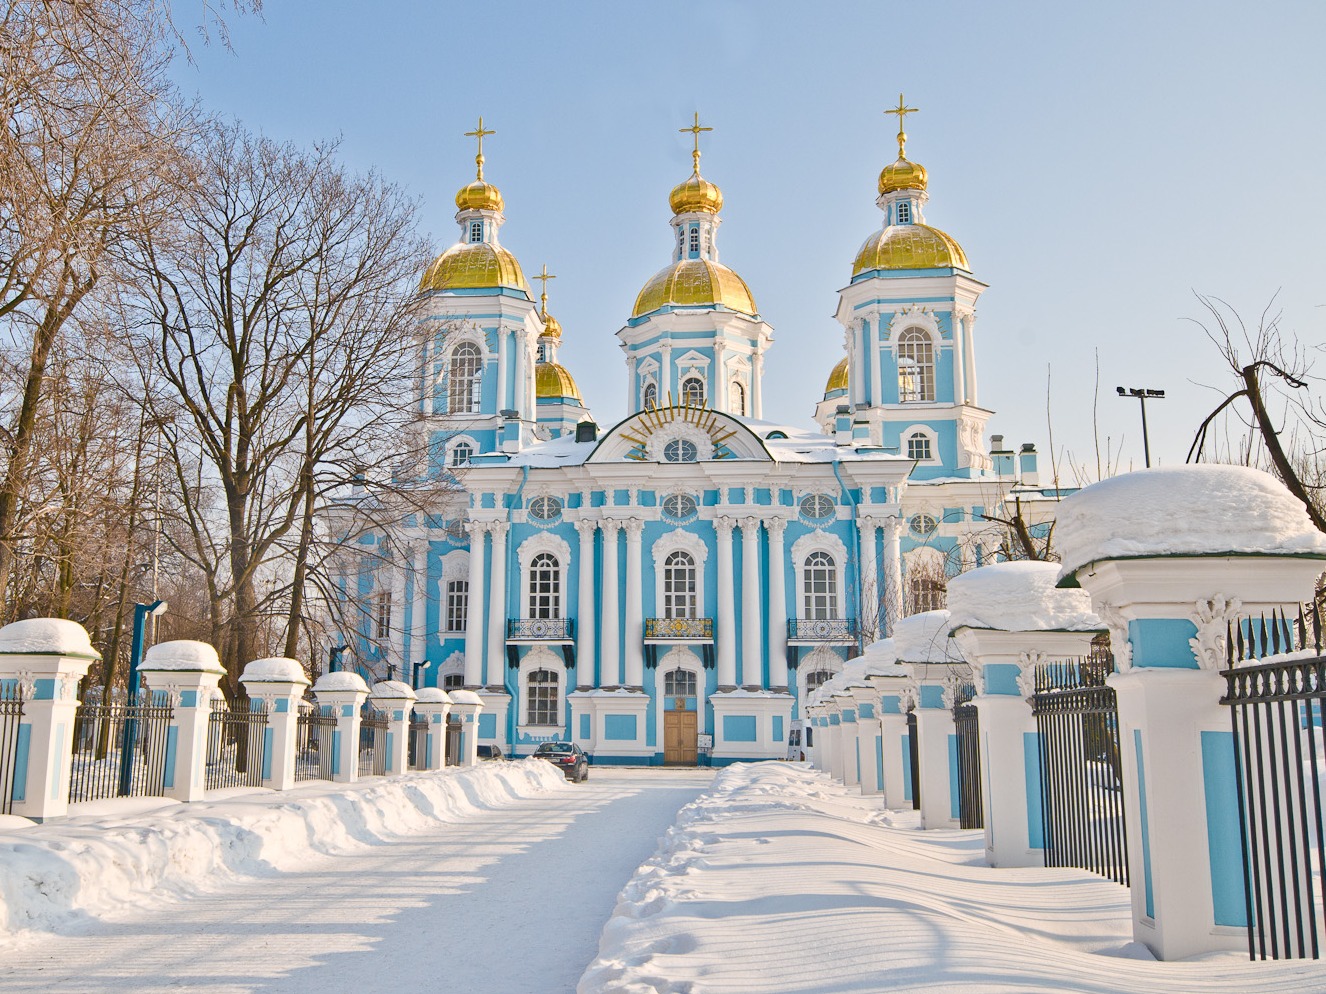 Chùm ảnh: Điểm danh 10 nhà thờ đẹp nhất nước Nga